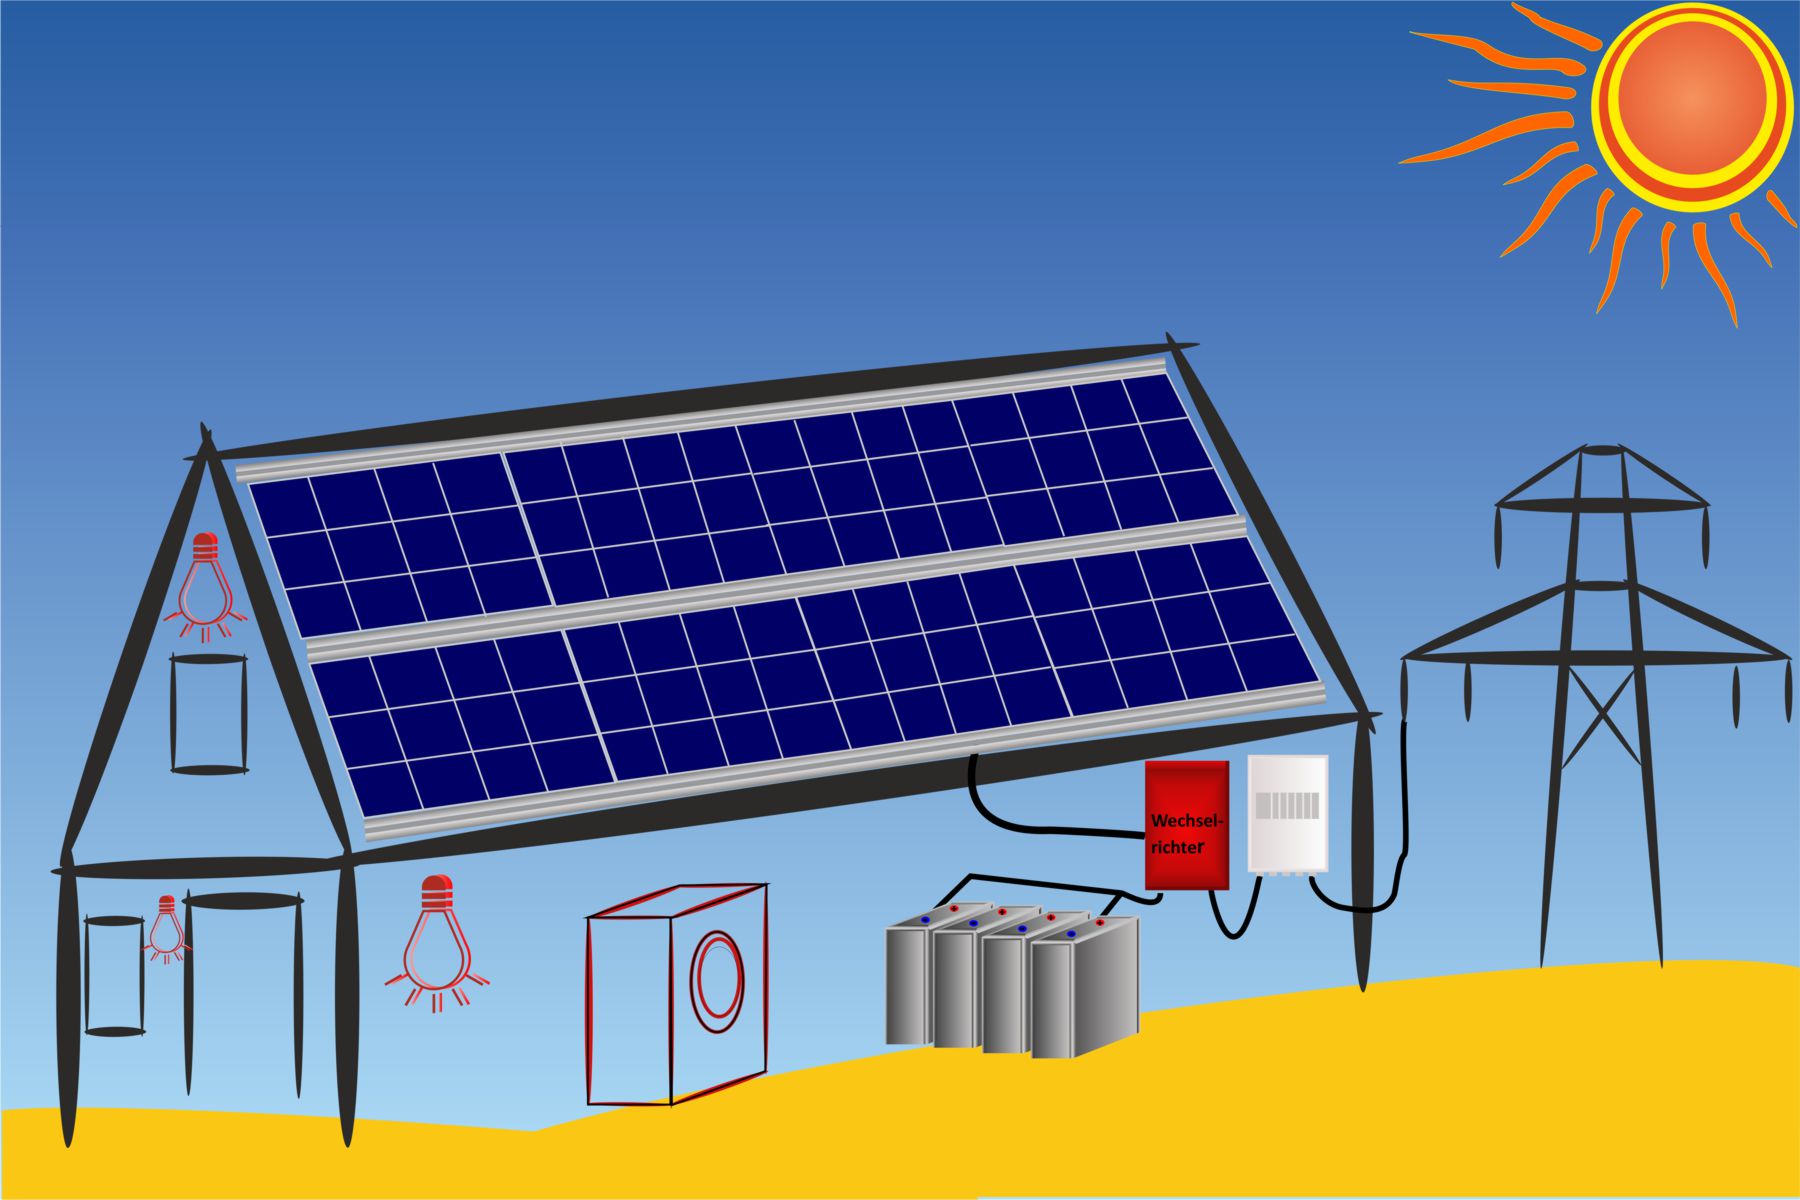 Sun energy catch with solar modules create an hybrid system 